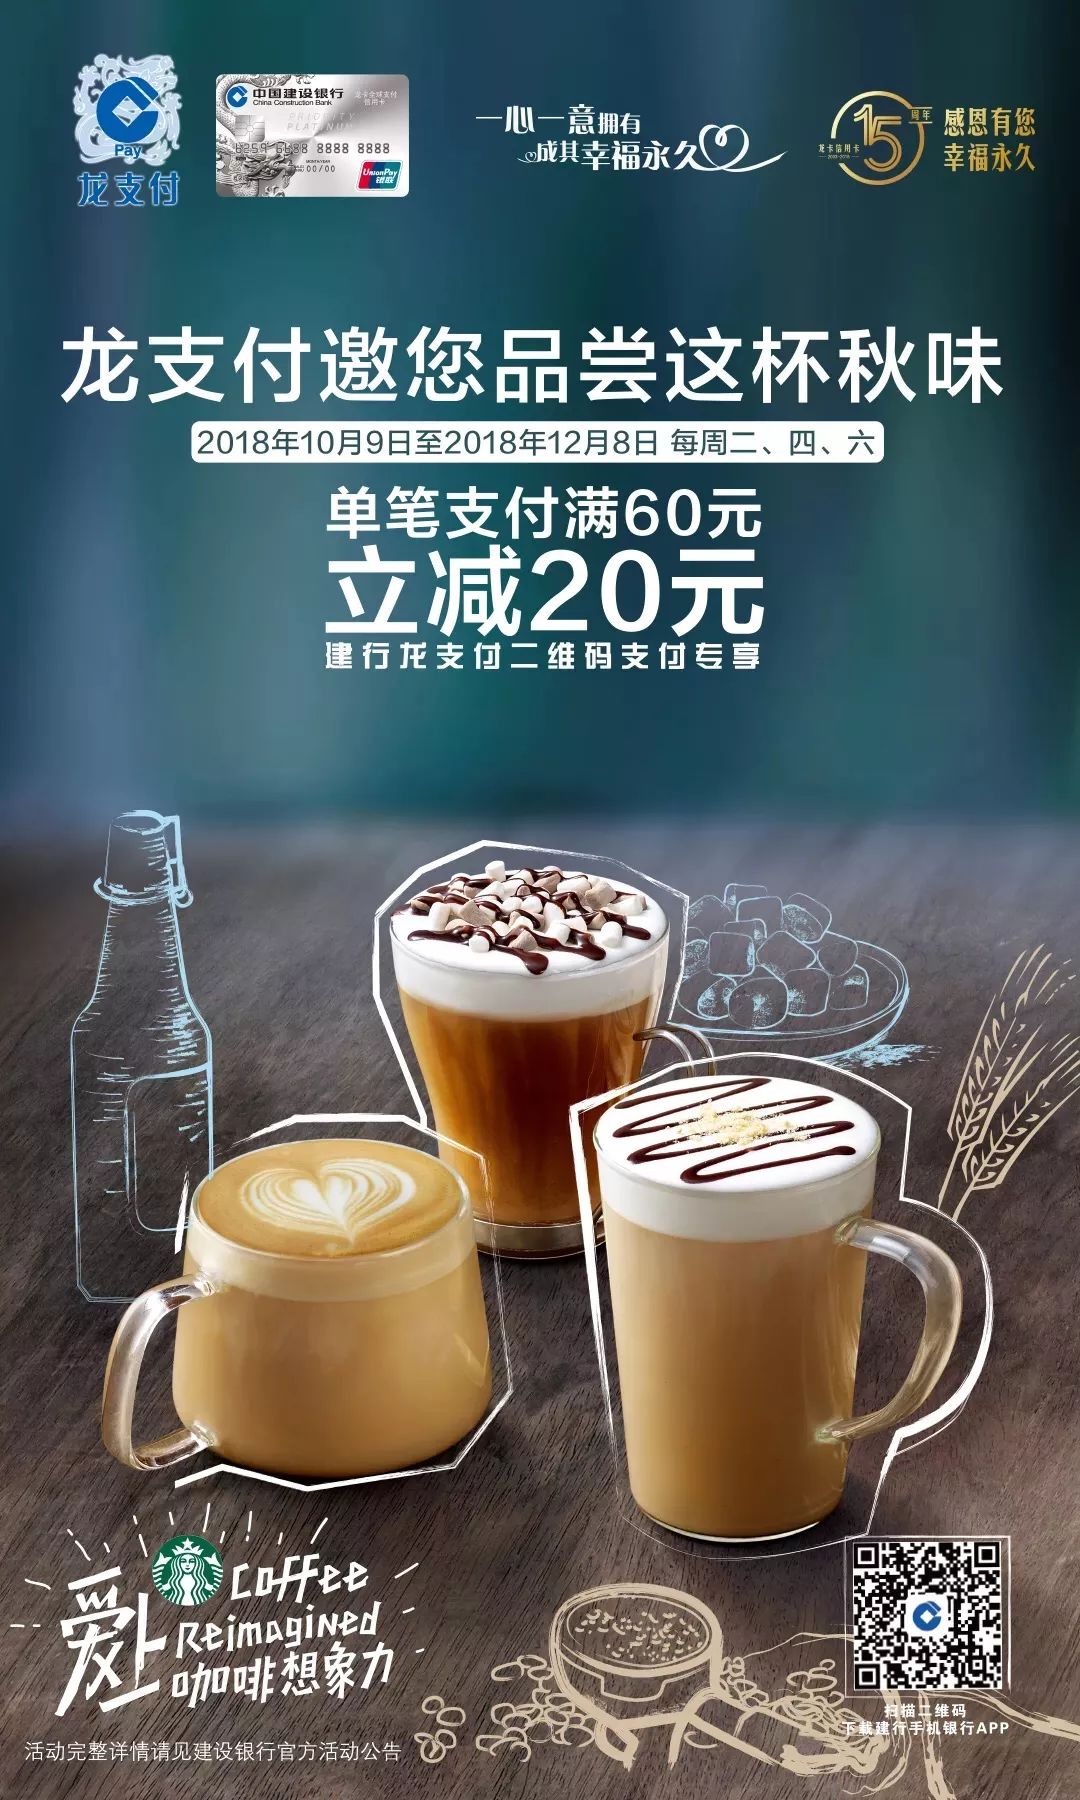 星巴克中国广告图片